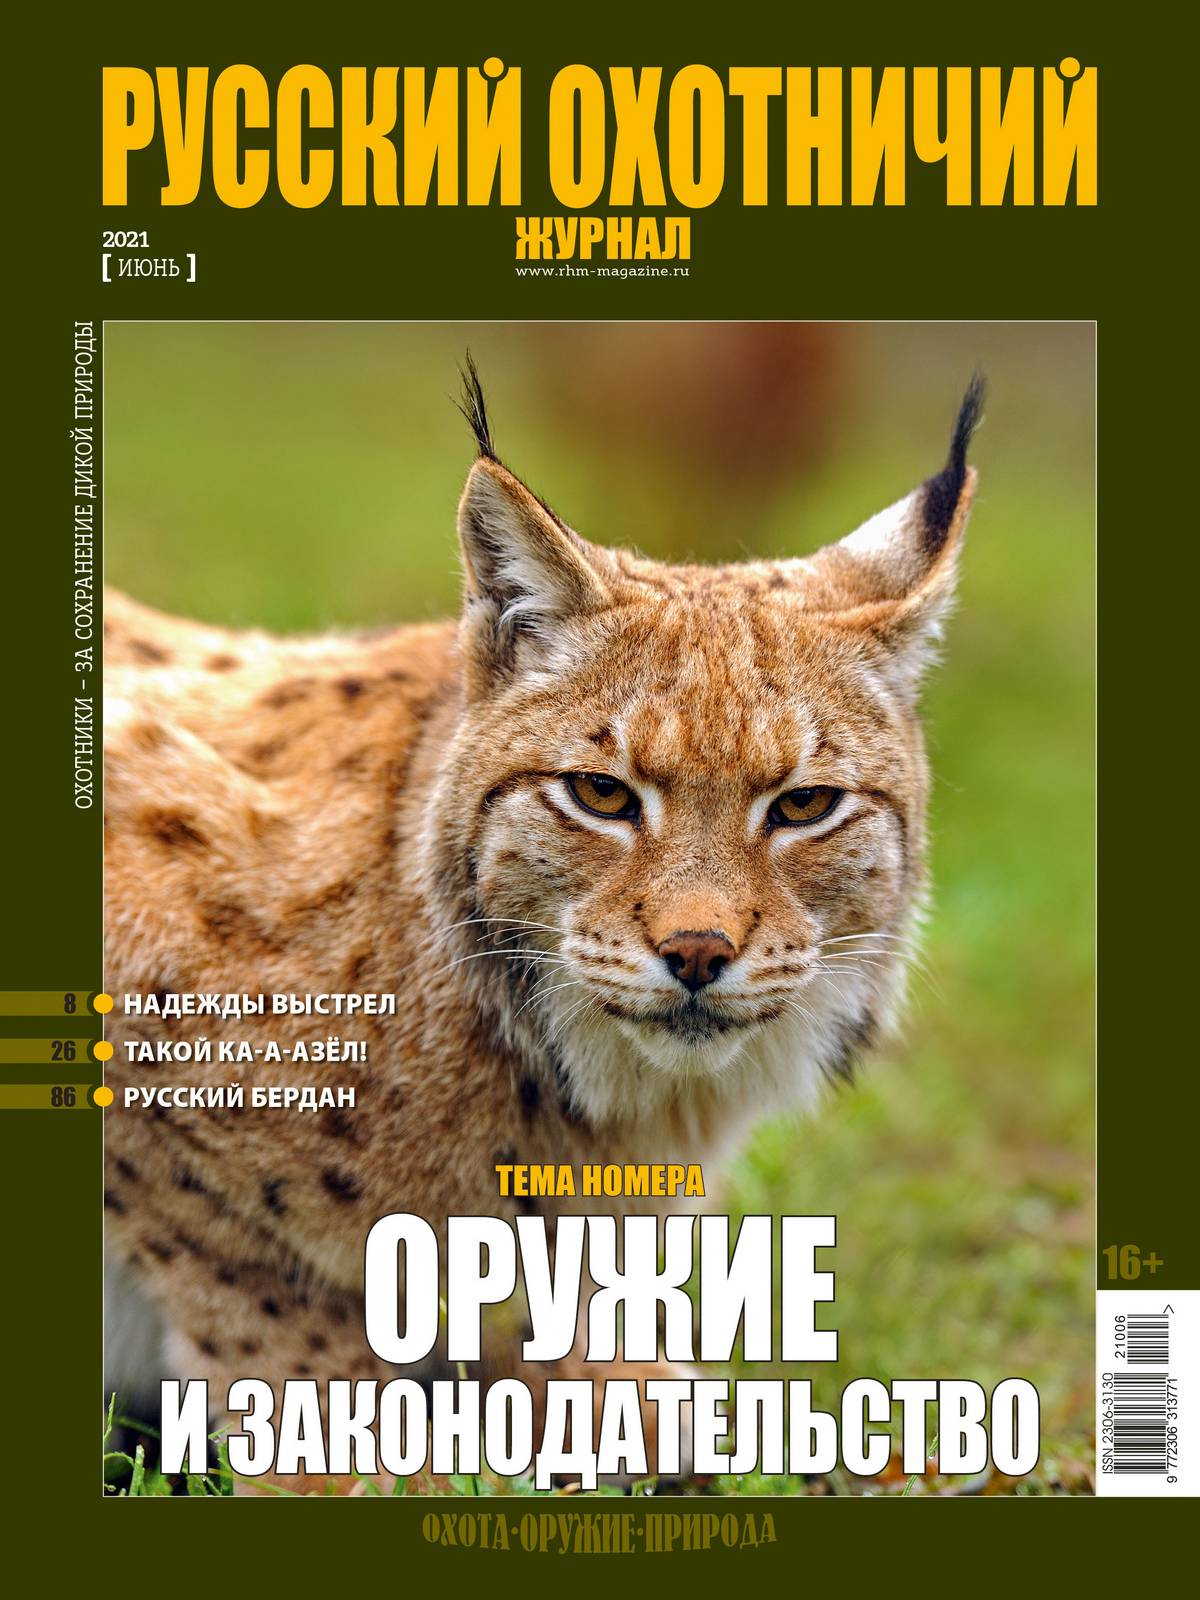 Оружие и законодательство. «Русский охотничий журнал», №6 июнь 2021